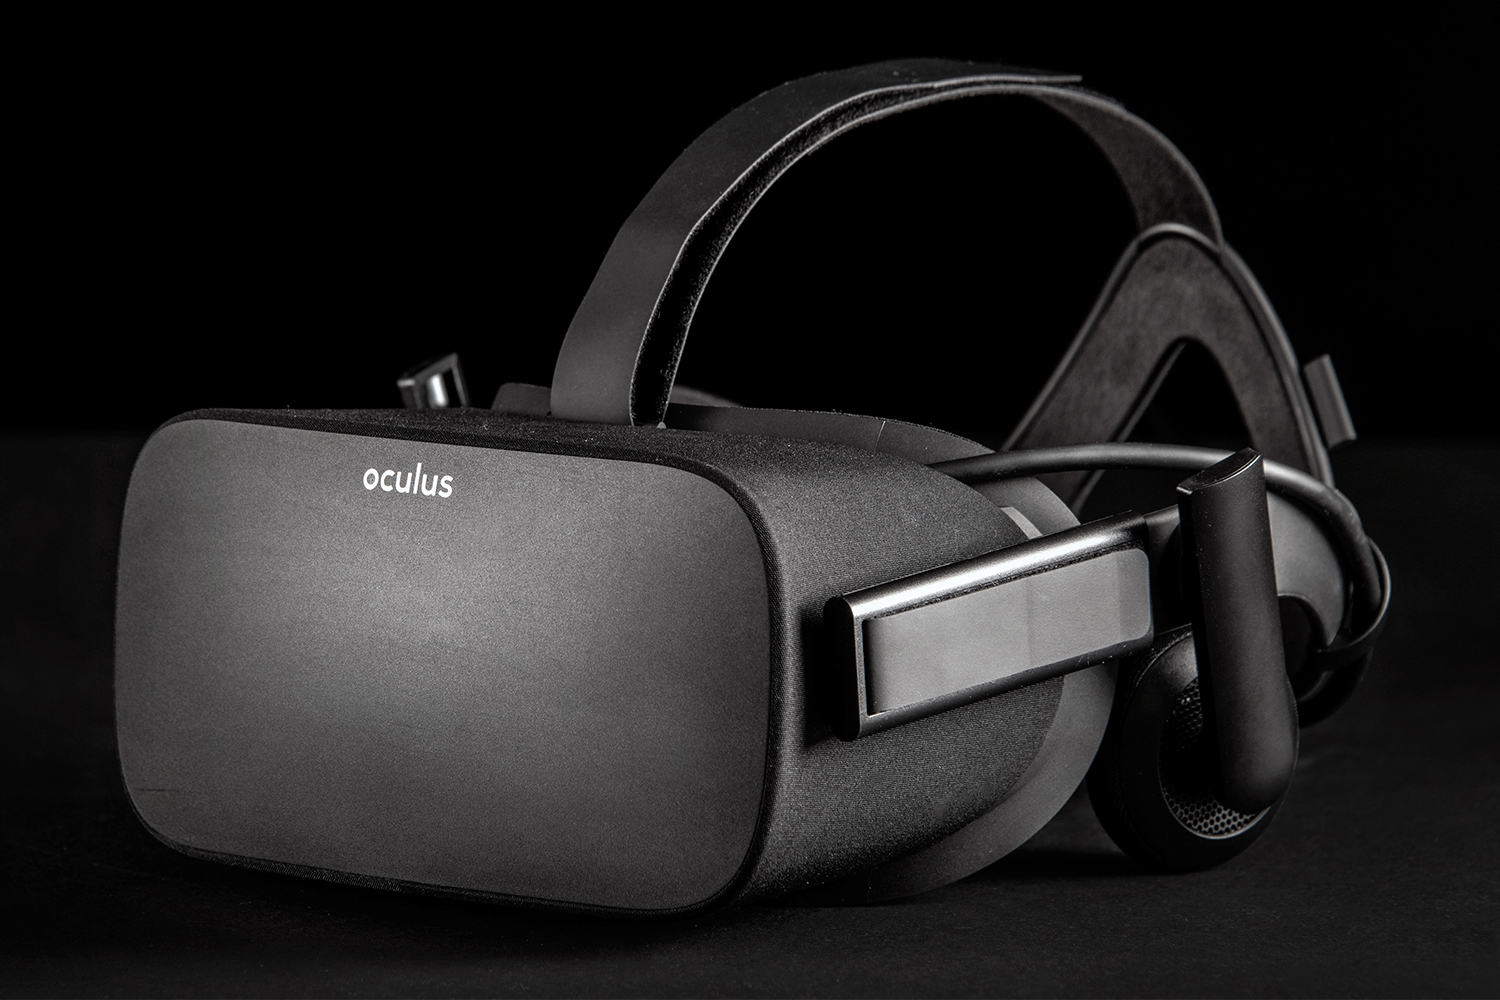 Oculus Rift Review